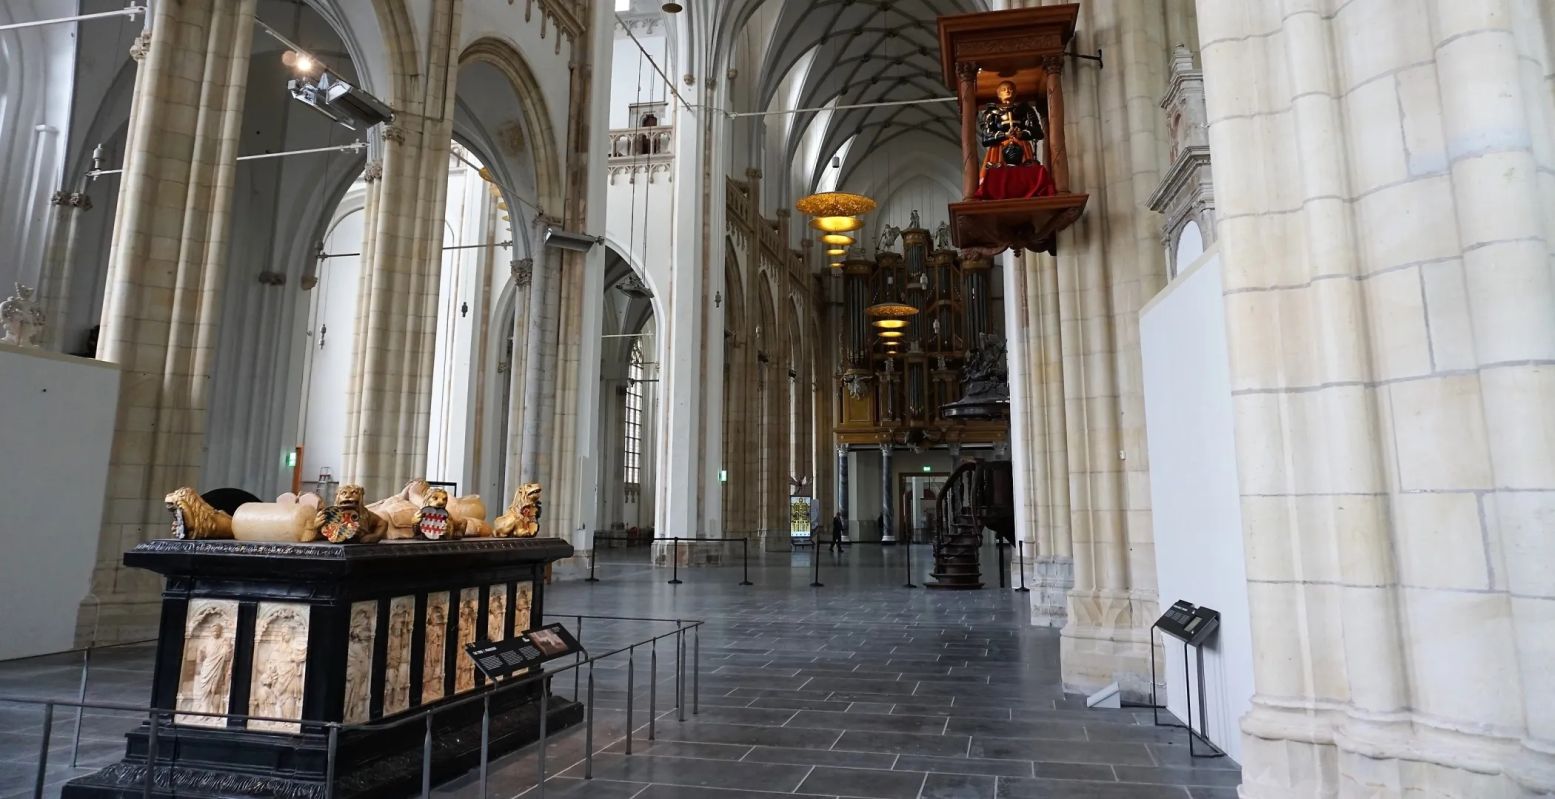 De kerkzaal van de Eusebiuskerk met het praalgraf en harnas van hertog Karel van Gelre. Foto: DagjeWeg.NL © Tonny van Oosten